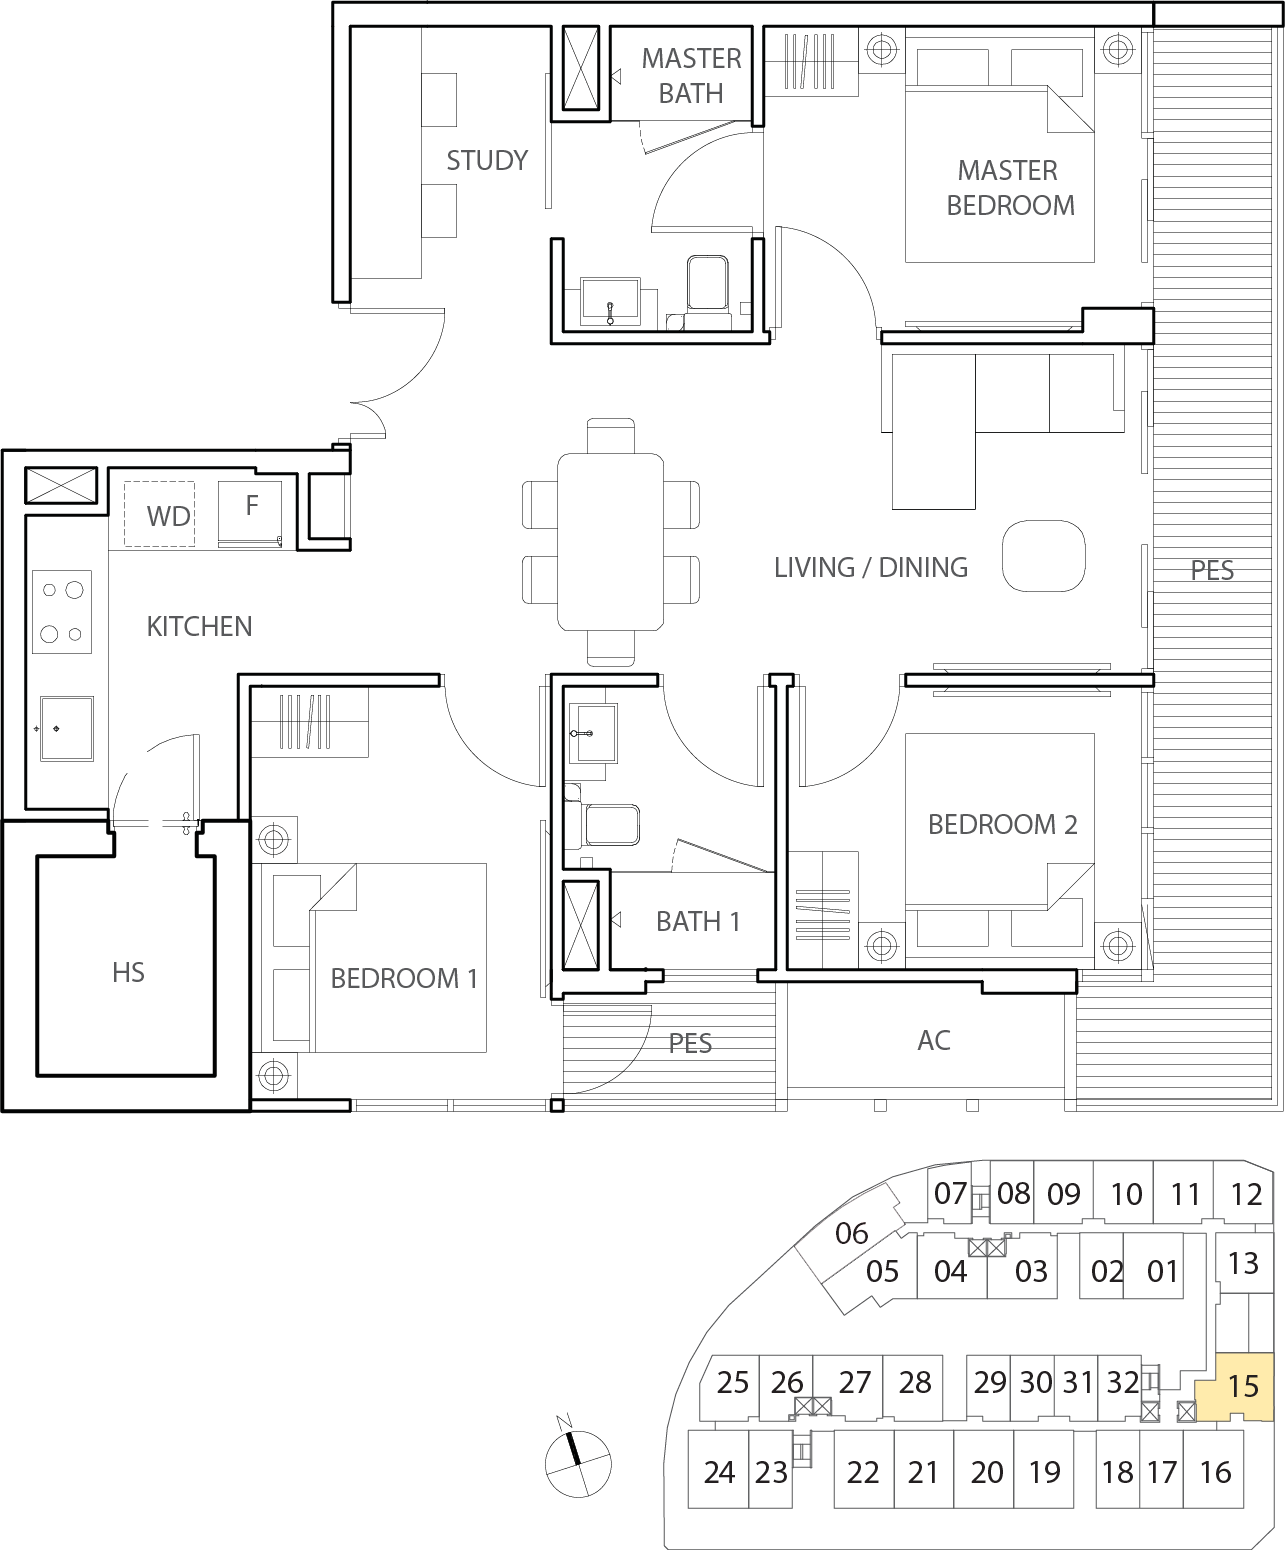 Floor Plan for Residential Type eC2